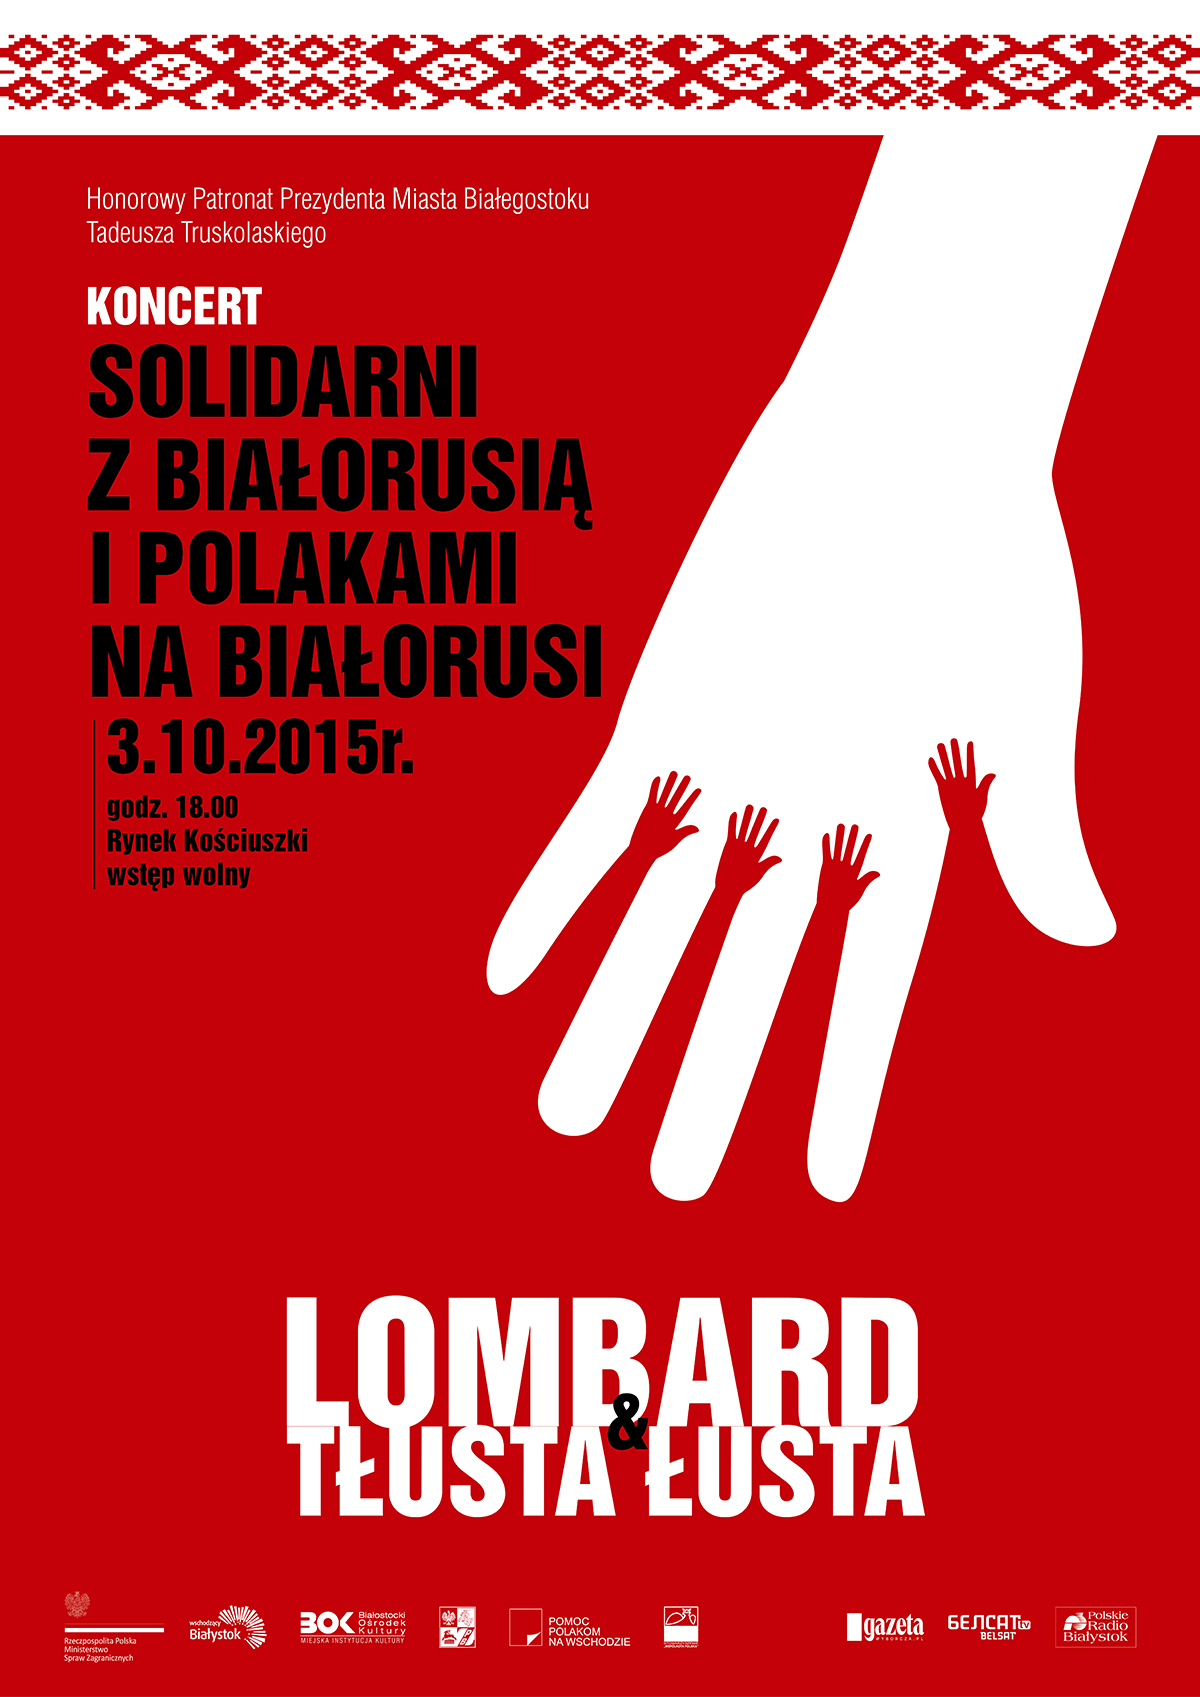 Plakat informujący o koncercie solidani z białorusią